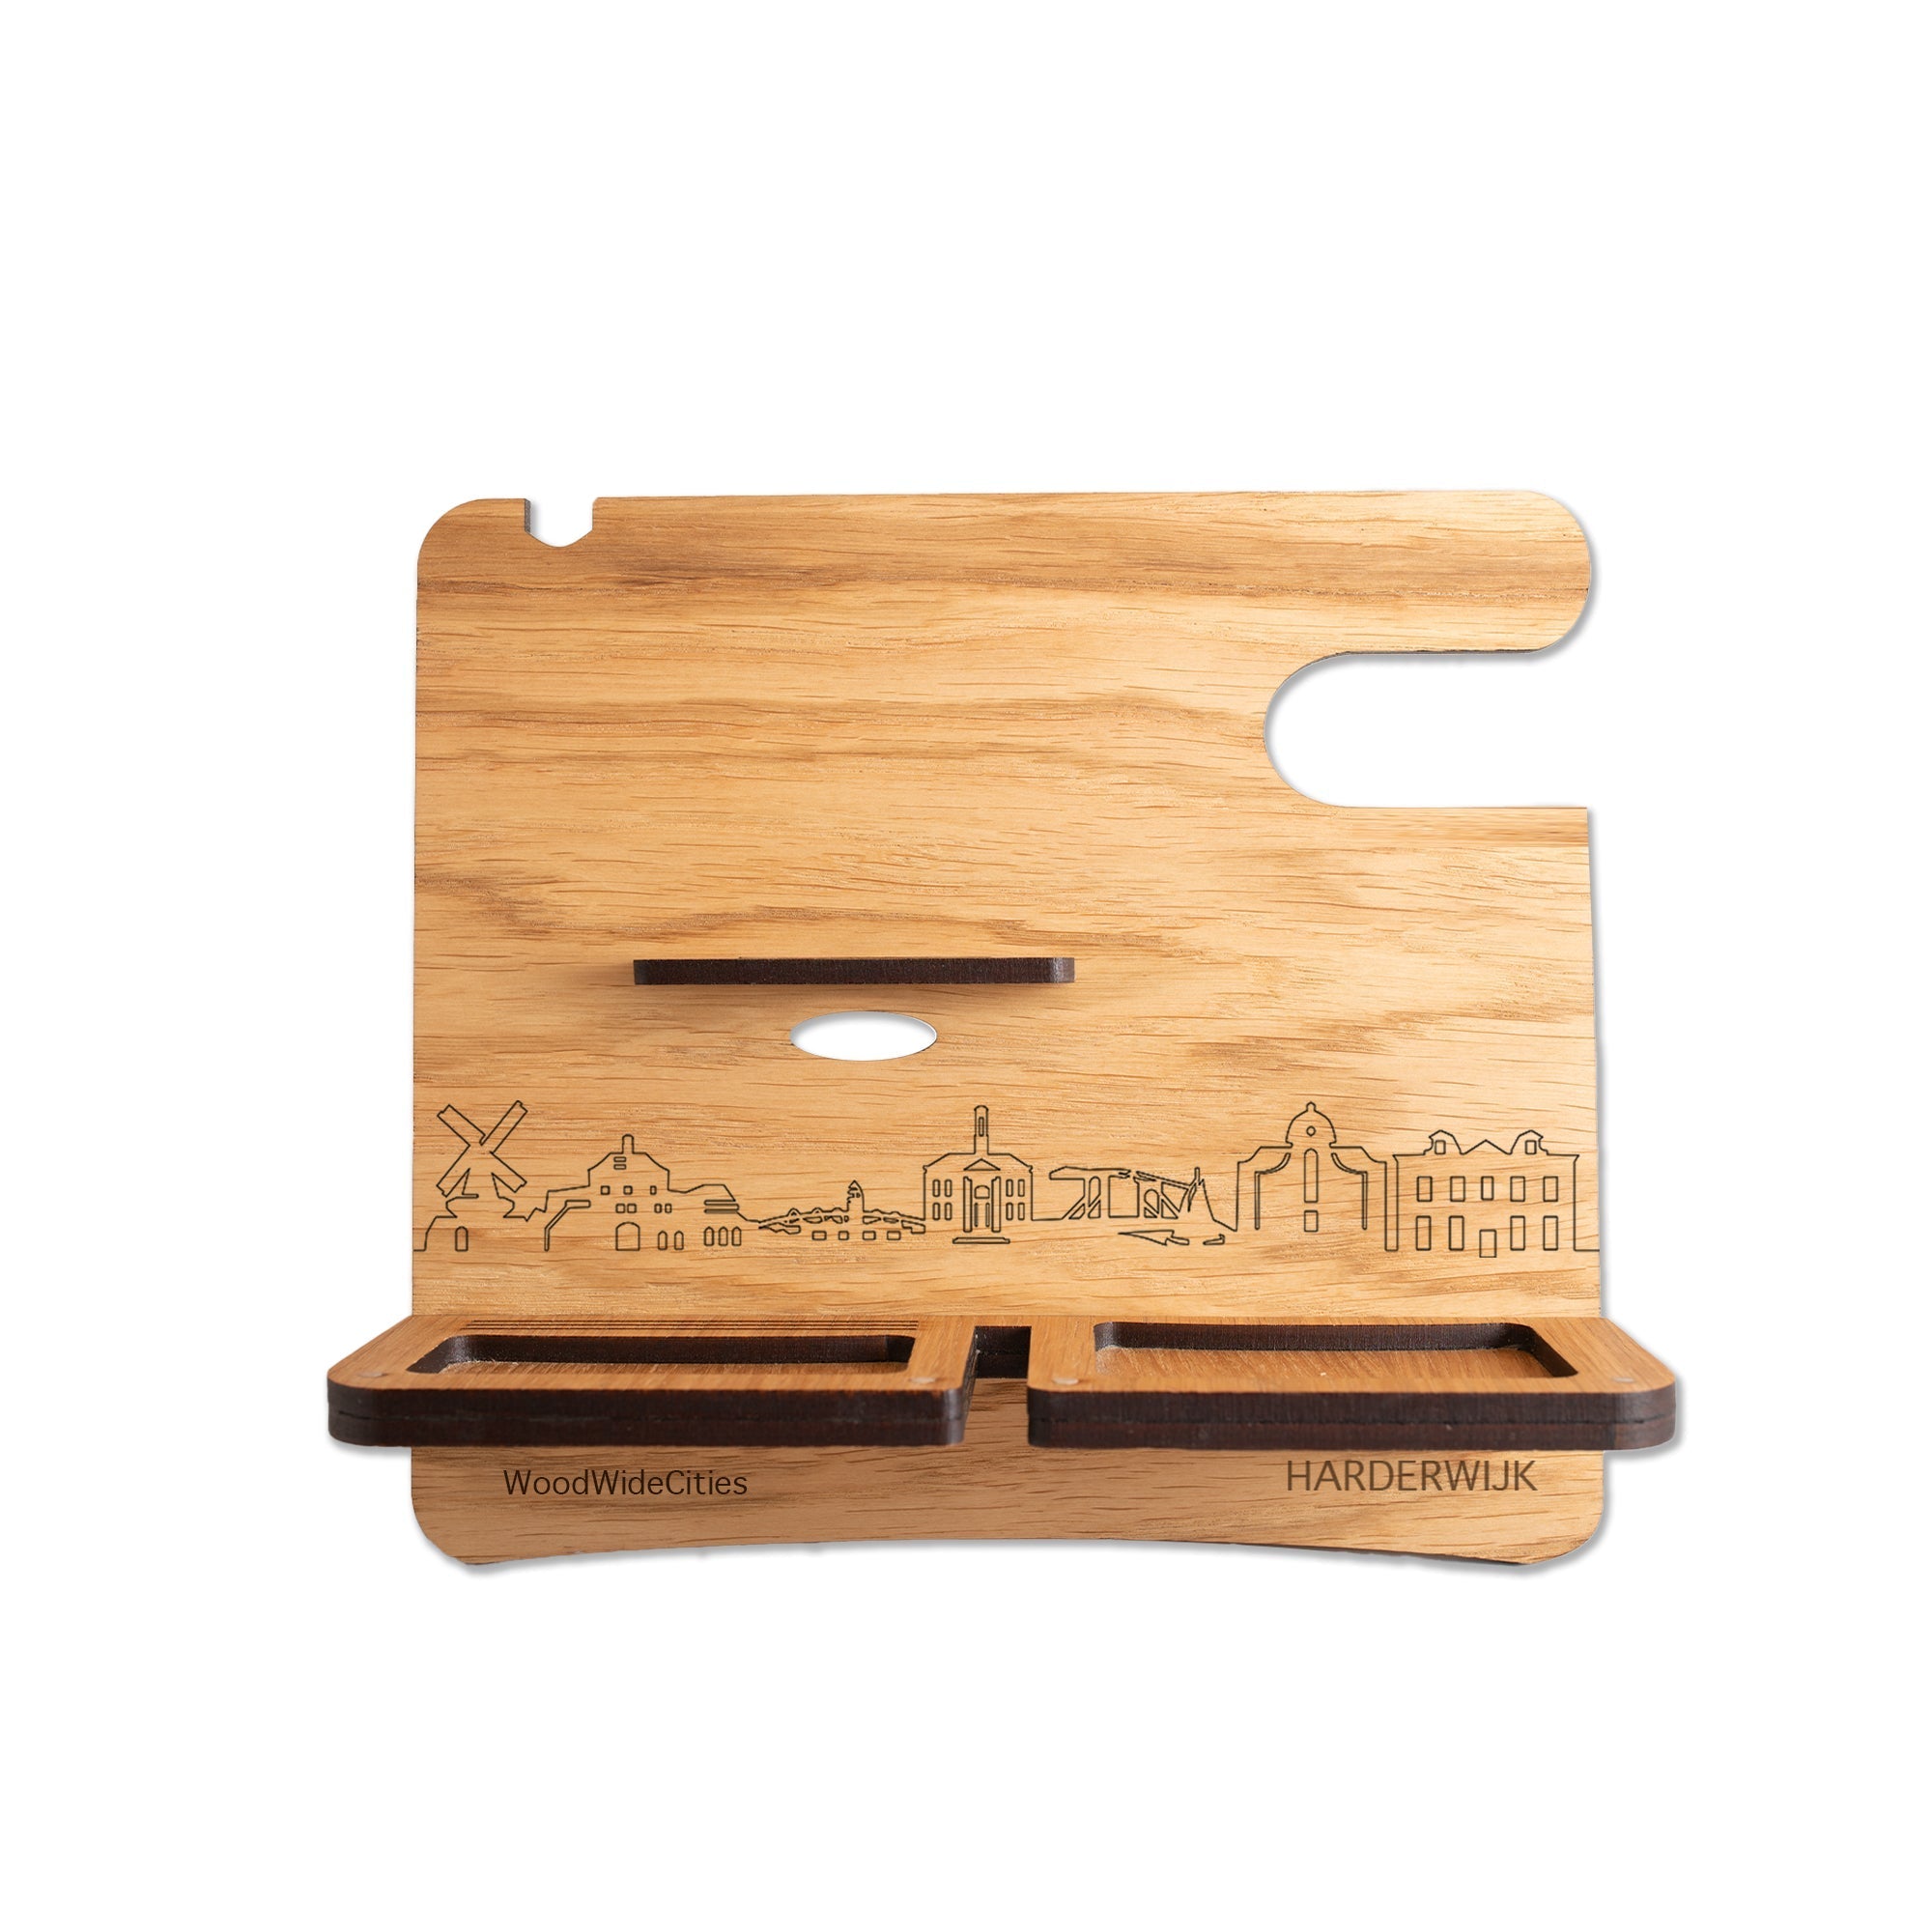 Skyline Desk Organizer Harderwijk houten cadeau decoratie relatiegeschenk van WoodWideCities